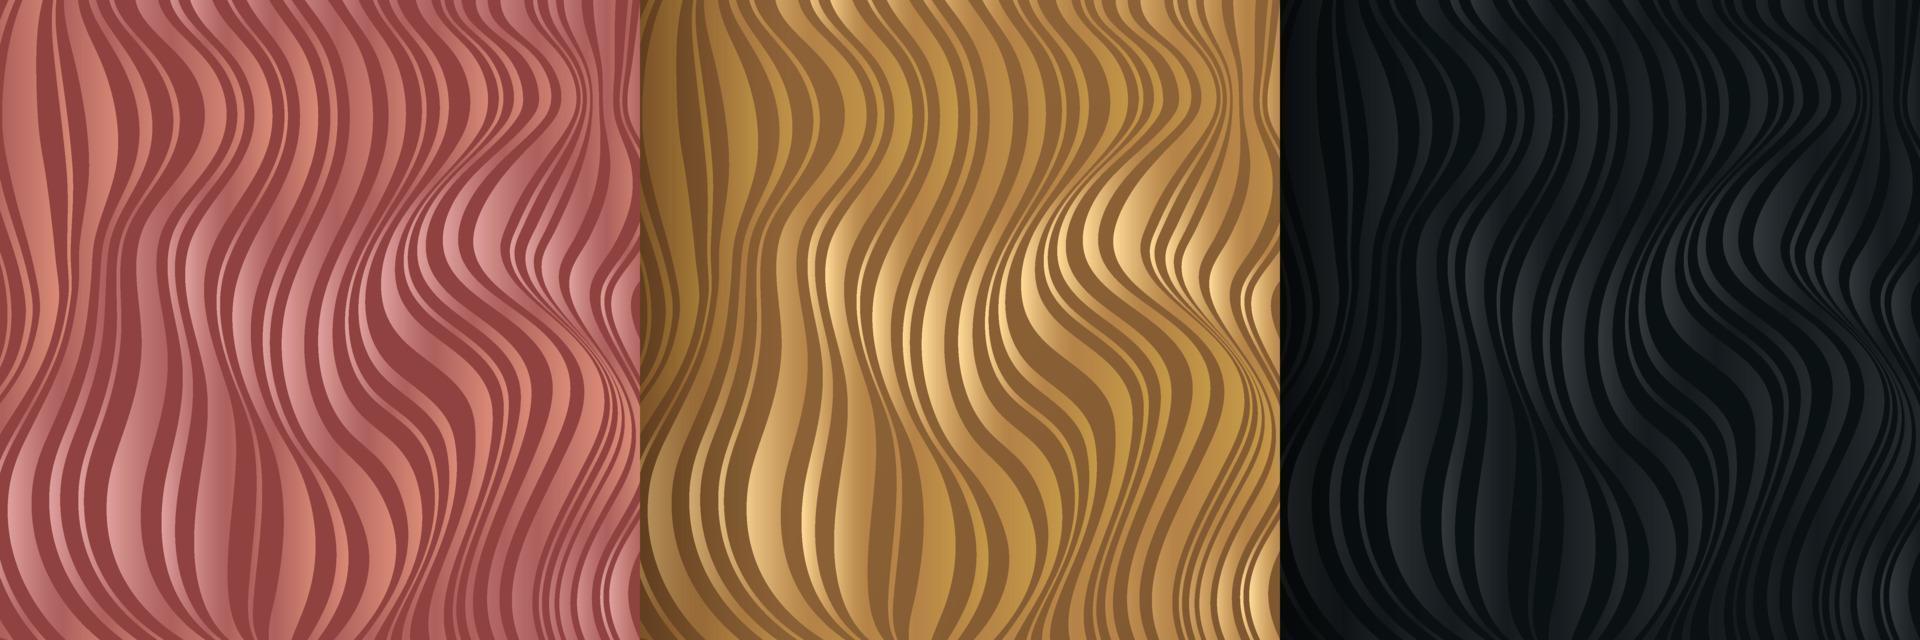 conjunto de fondo abstracto líquido dinámico negro, oro rosa y ondas doradas. diseño de patrón de textura de mármol oscuro fluido. textura de rayas de línea ondulada moderna. lujo y estilo elegante. ilustración vectorial vector